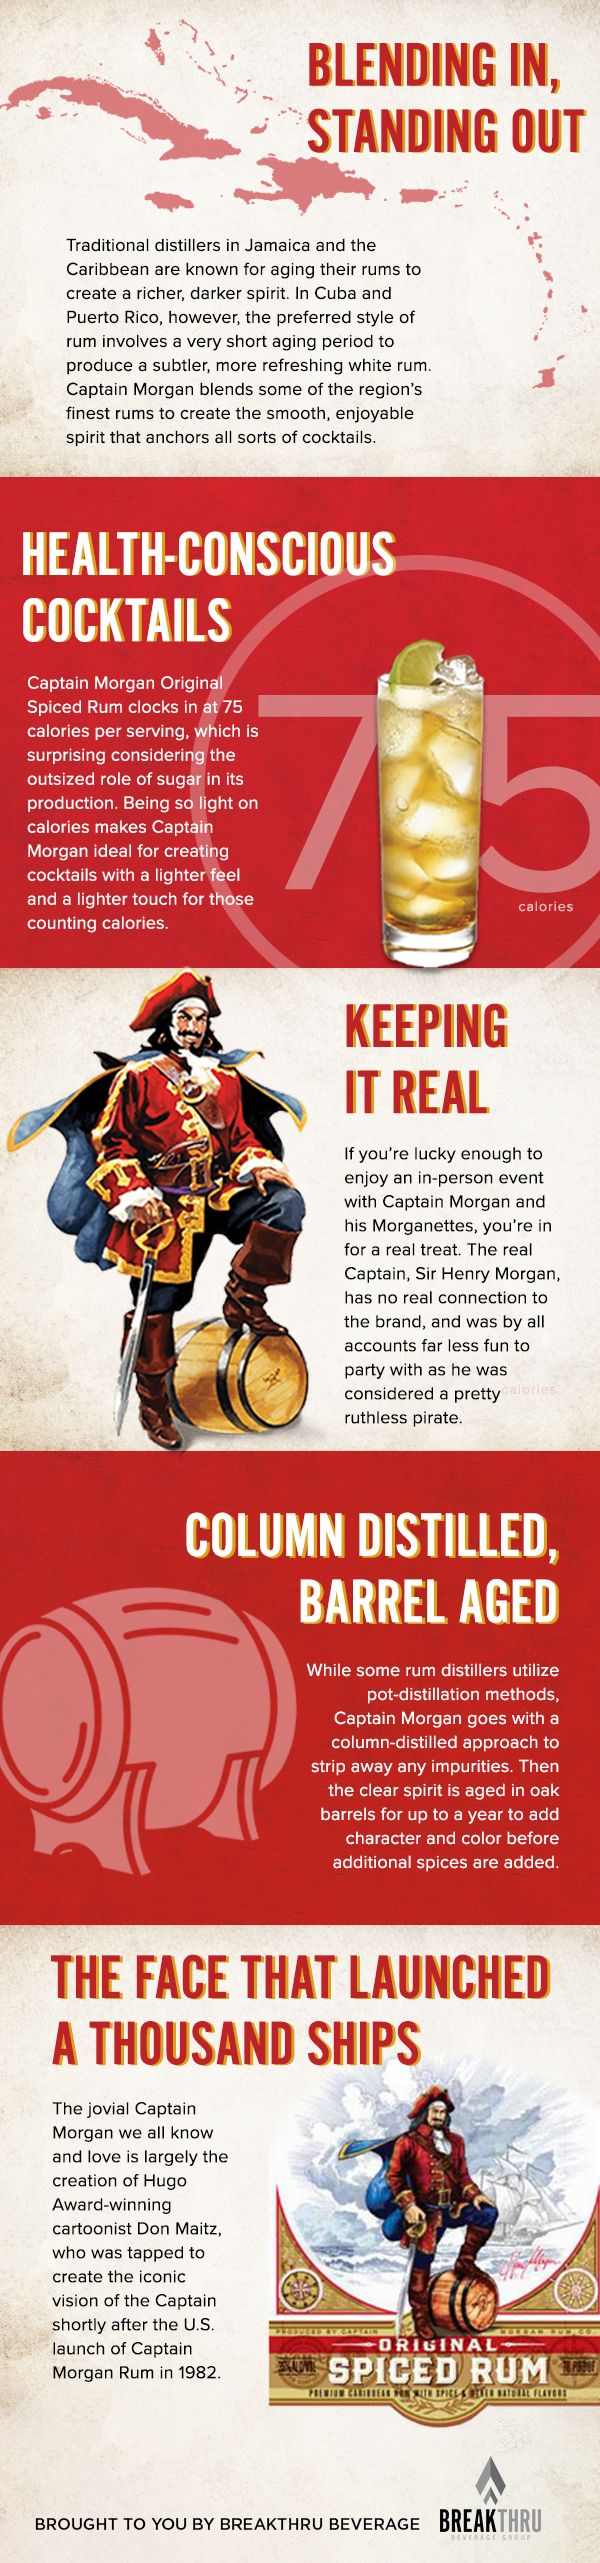 Breakthru Beverage presents So You Think You Know Captain Morgan?